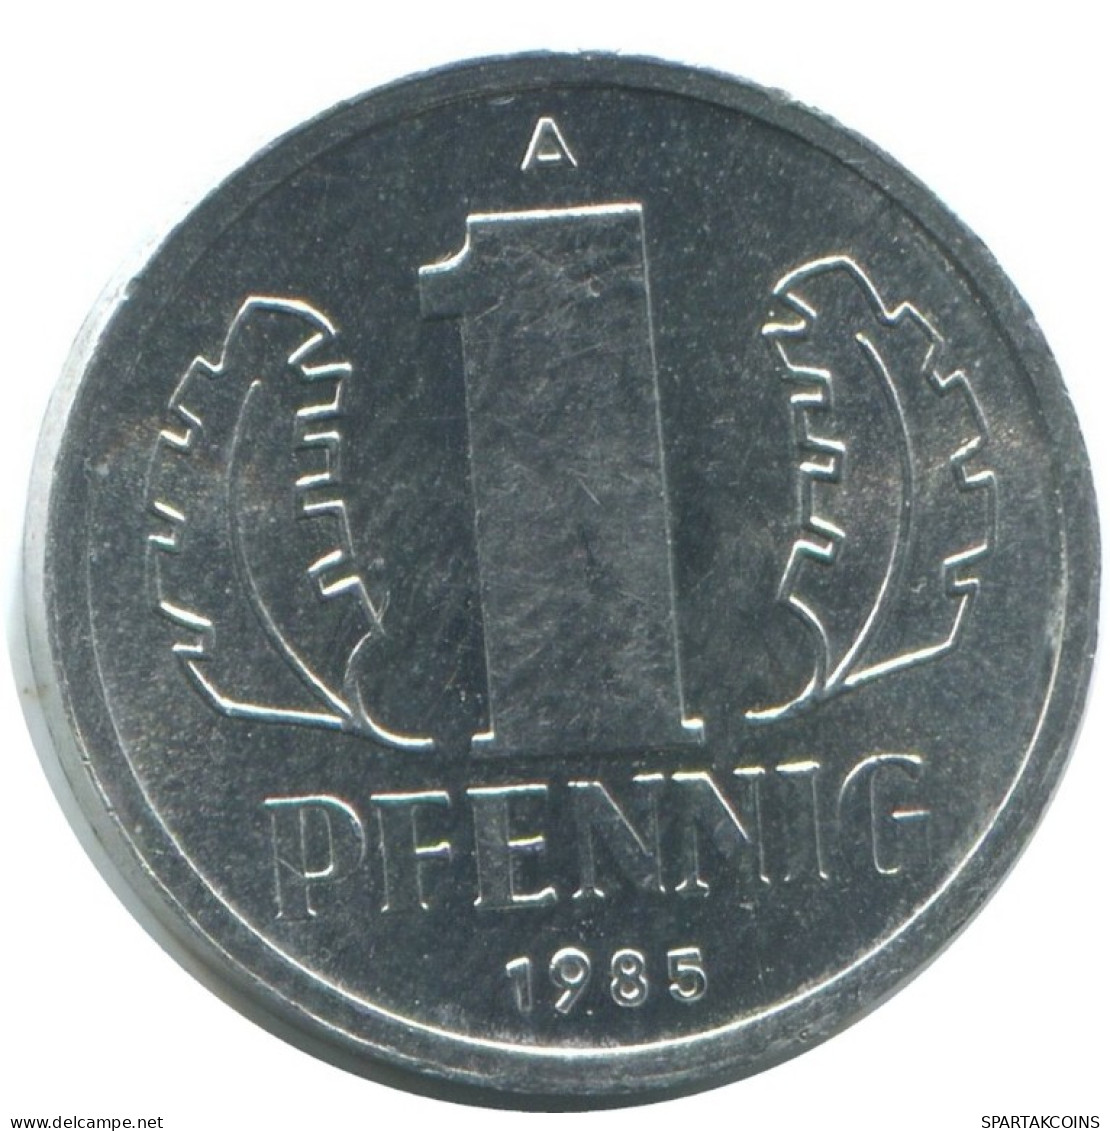 1 PFENNIG 1985 A DDR EAST DEUTSCHLAND Münze GERMANY #AE065.D.A - 1 Pfennig